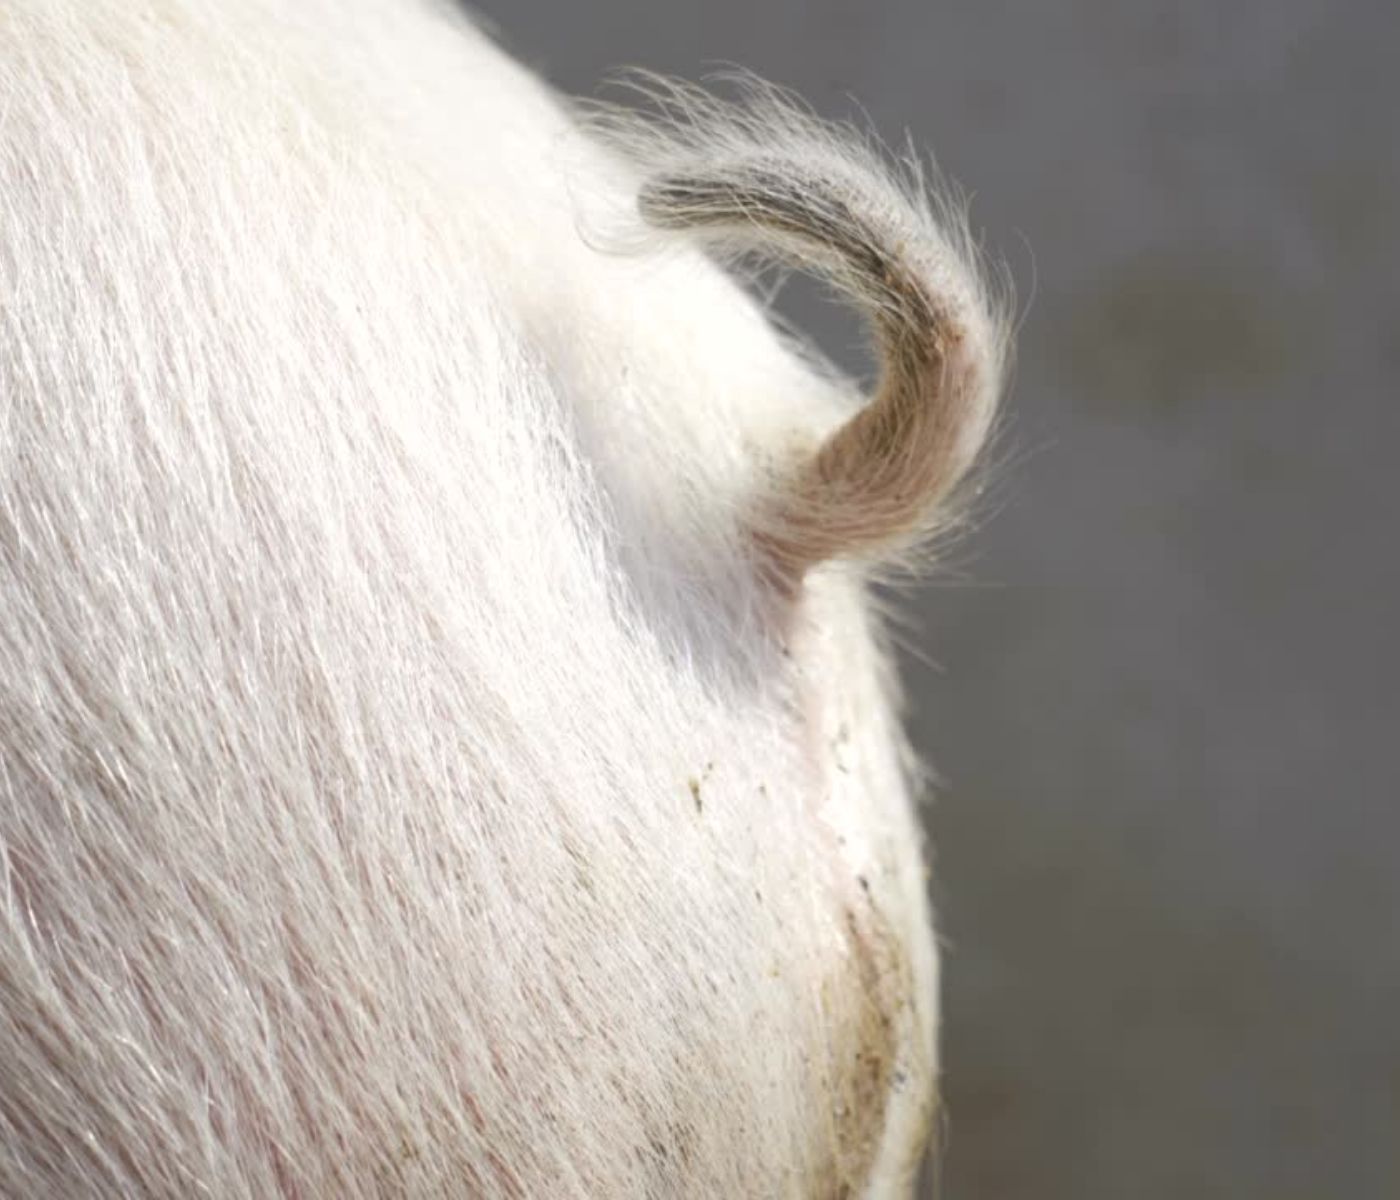 Plan de acción para prevenir la mordedura de cola y evitar el raboteo en ganado porcino